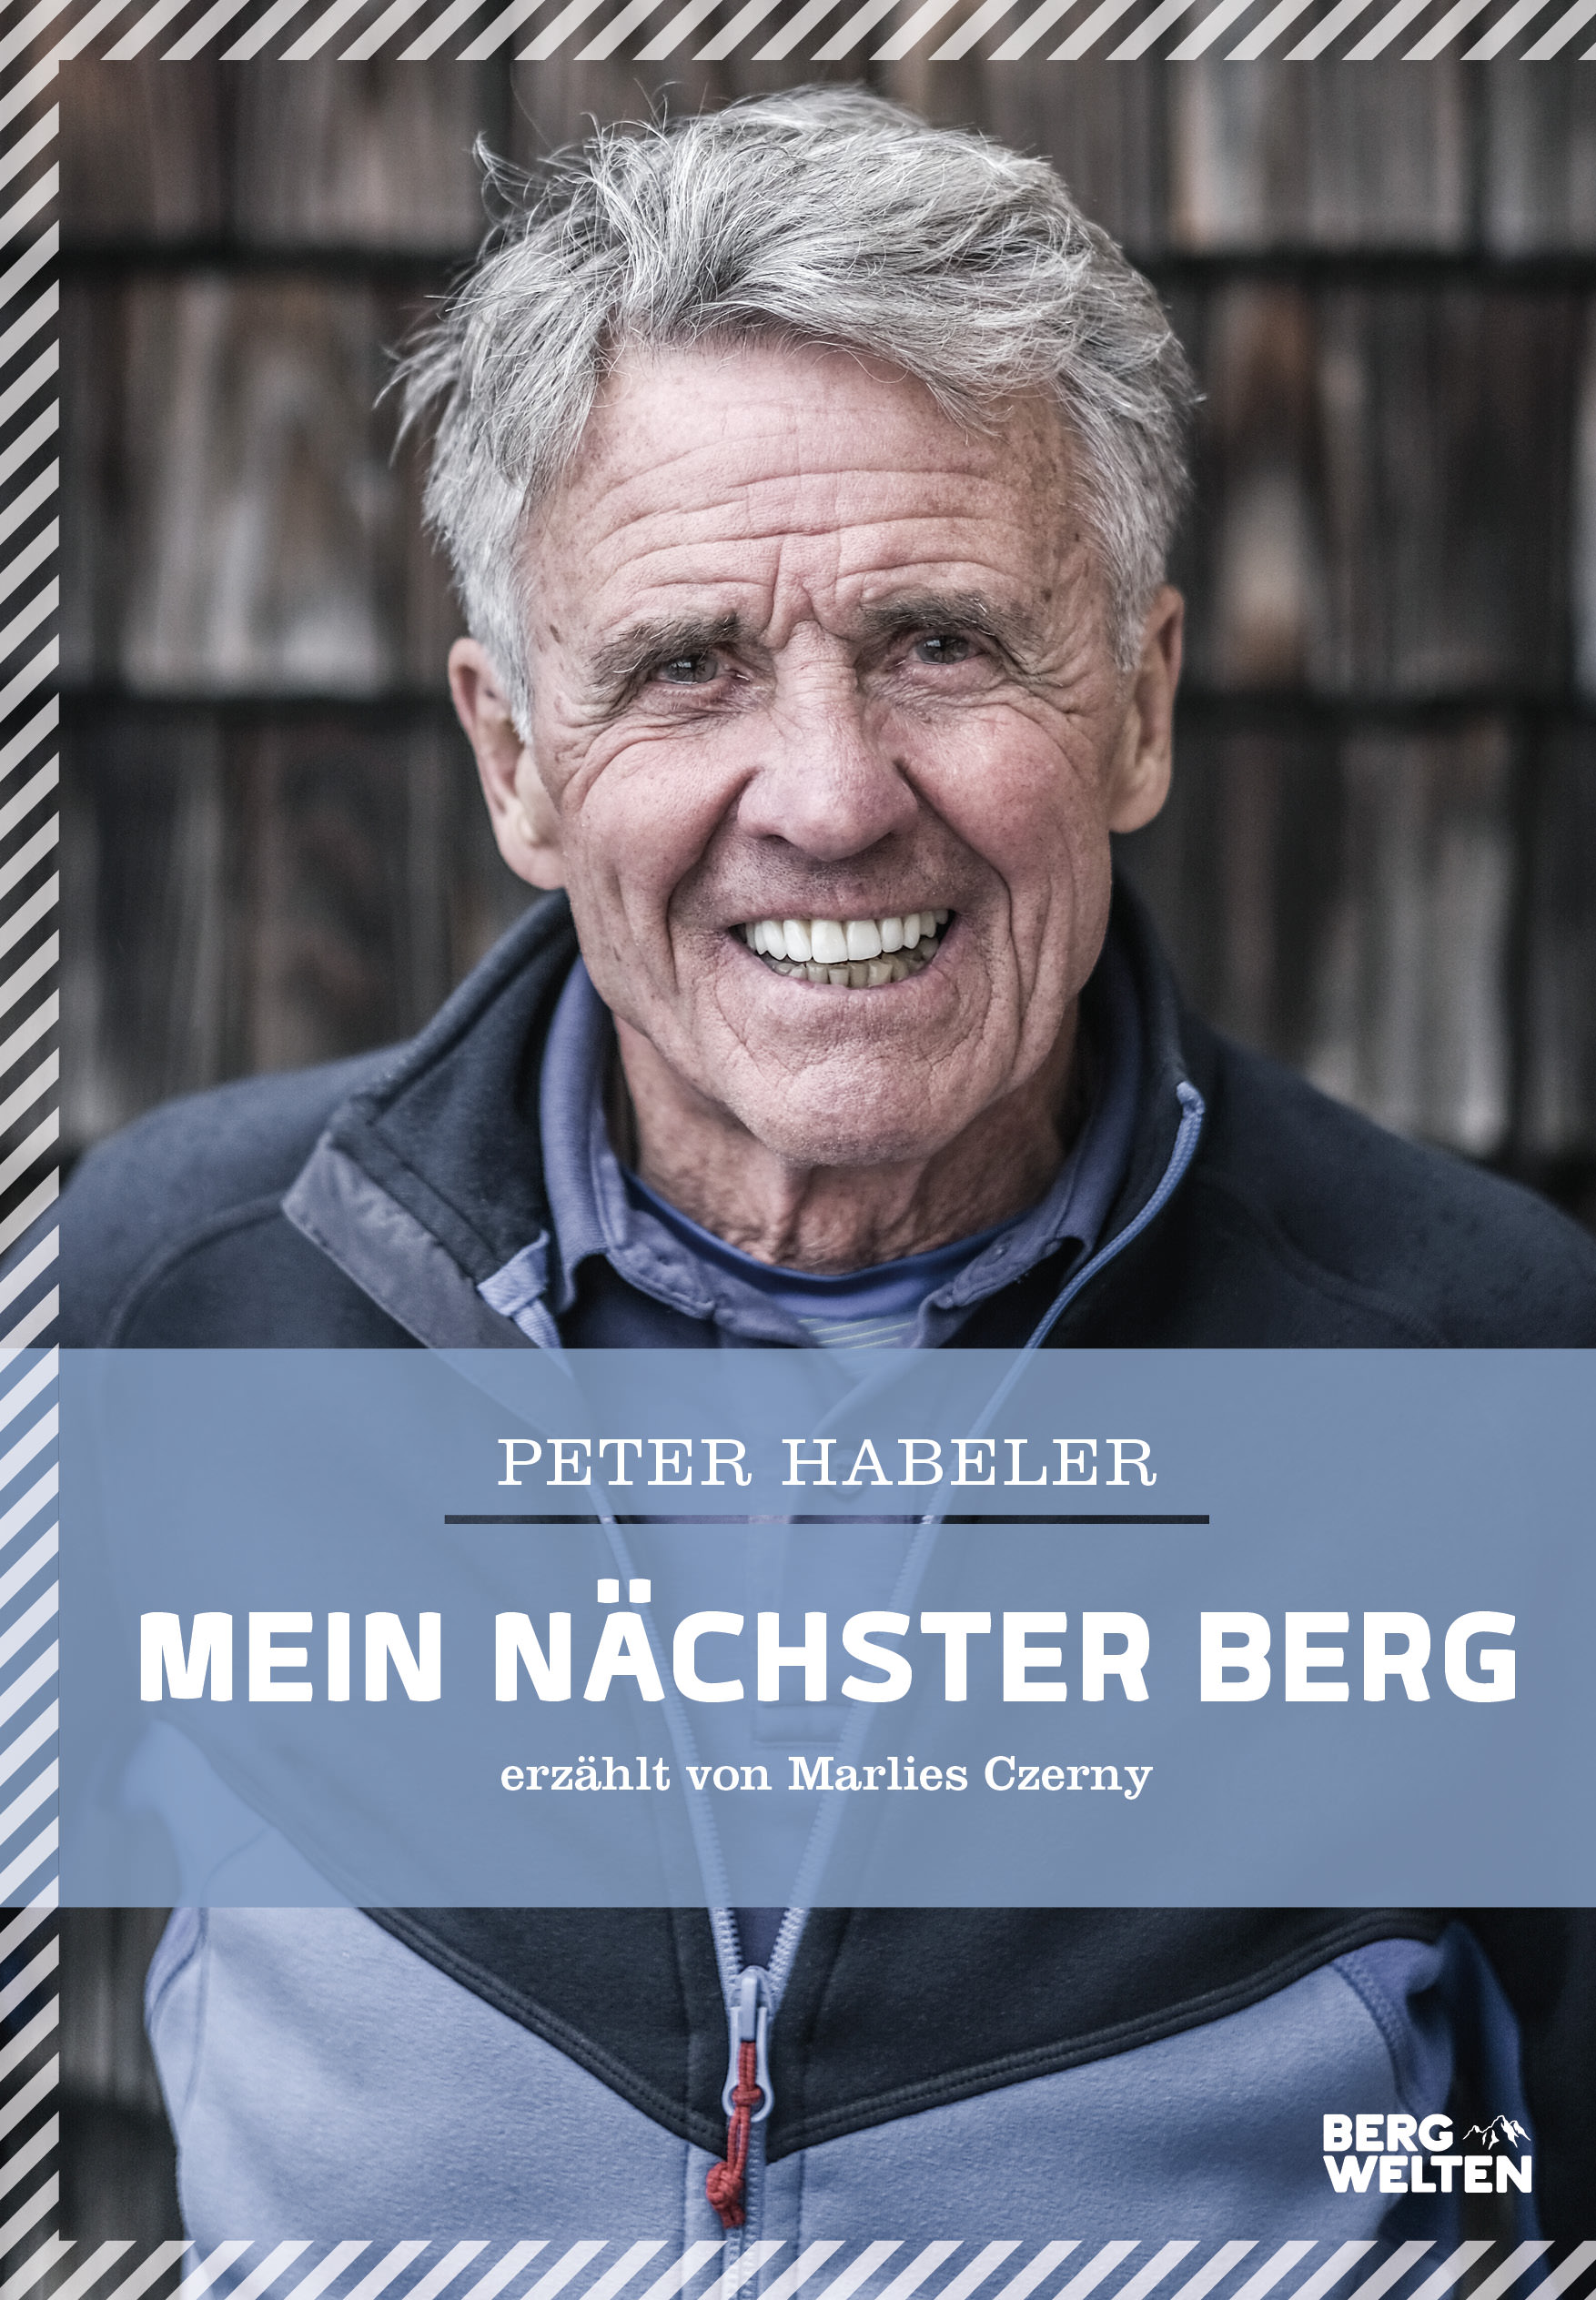 Buchcover: Peter Habeler: Mein nächster Berg